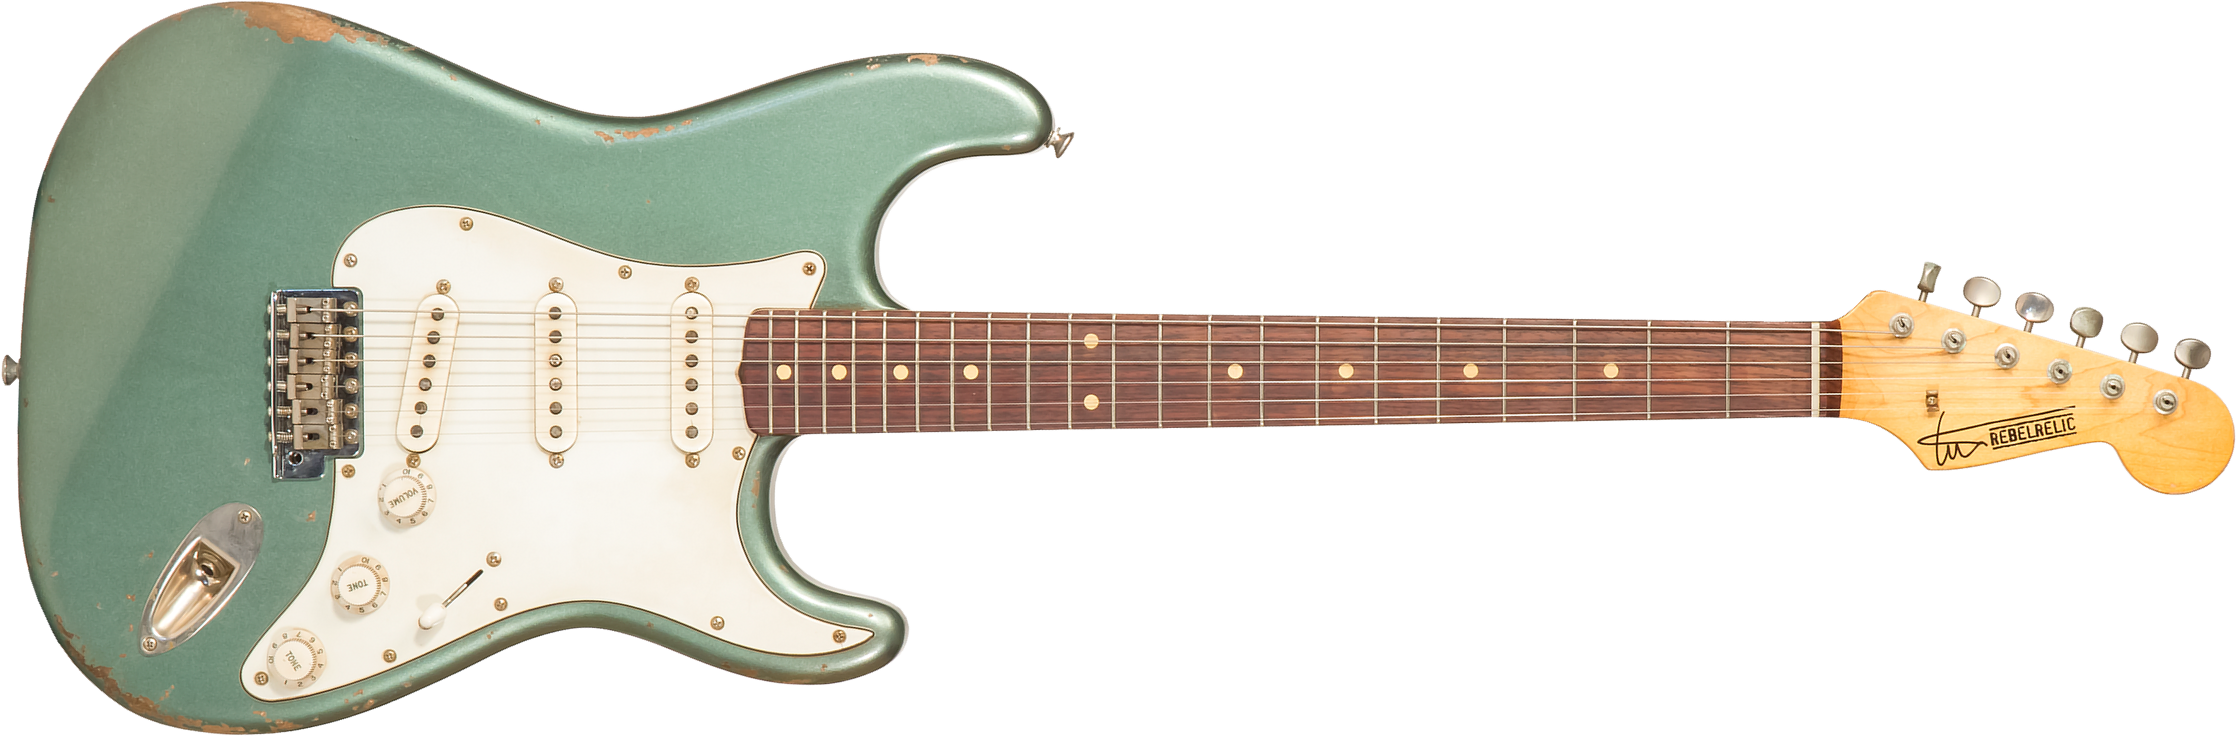 Rebelrelic S-series 62 3s Trem Rw #230203 - Light Aged Sherwood Forest Green - Elektrische gitaar in Str-vorm - Main picture